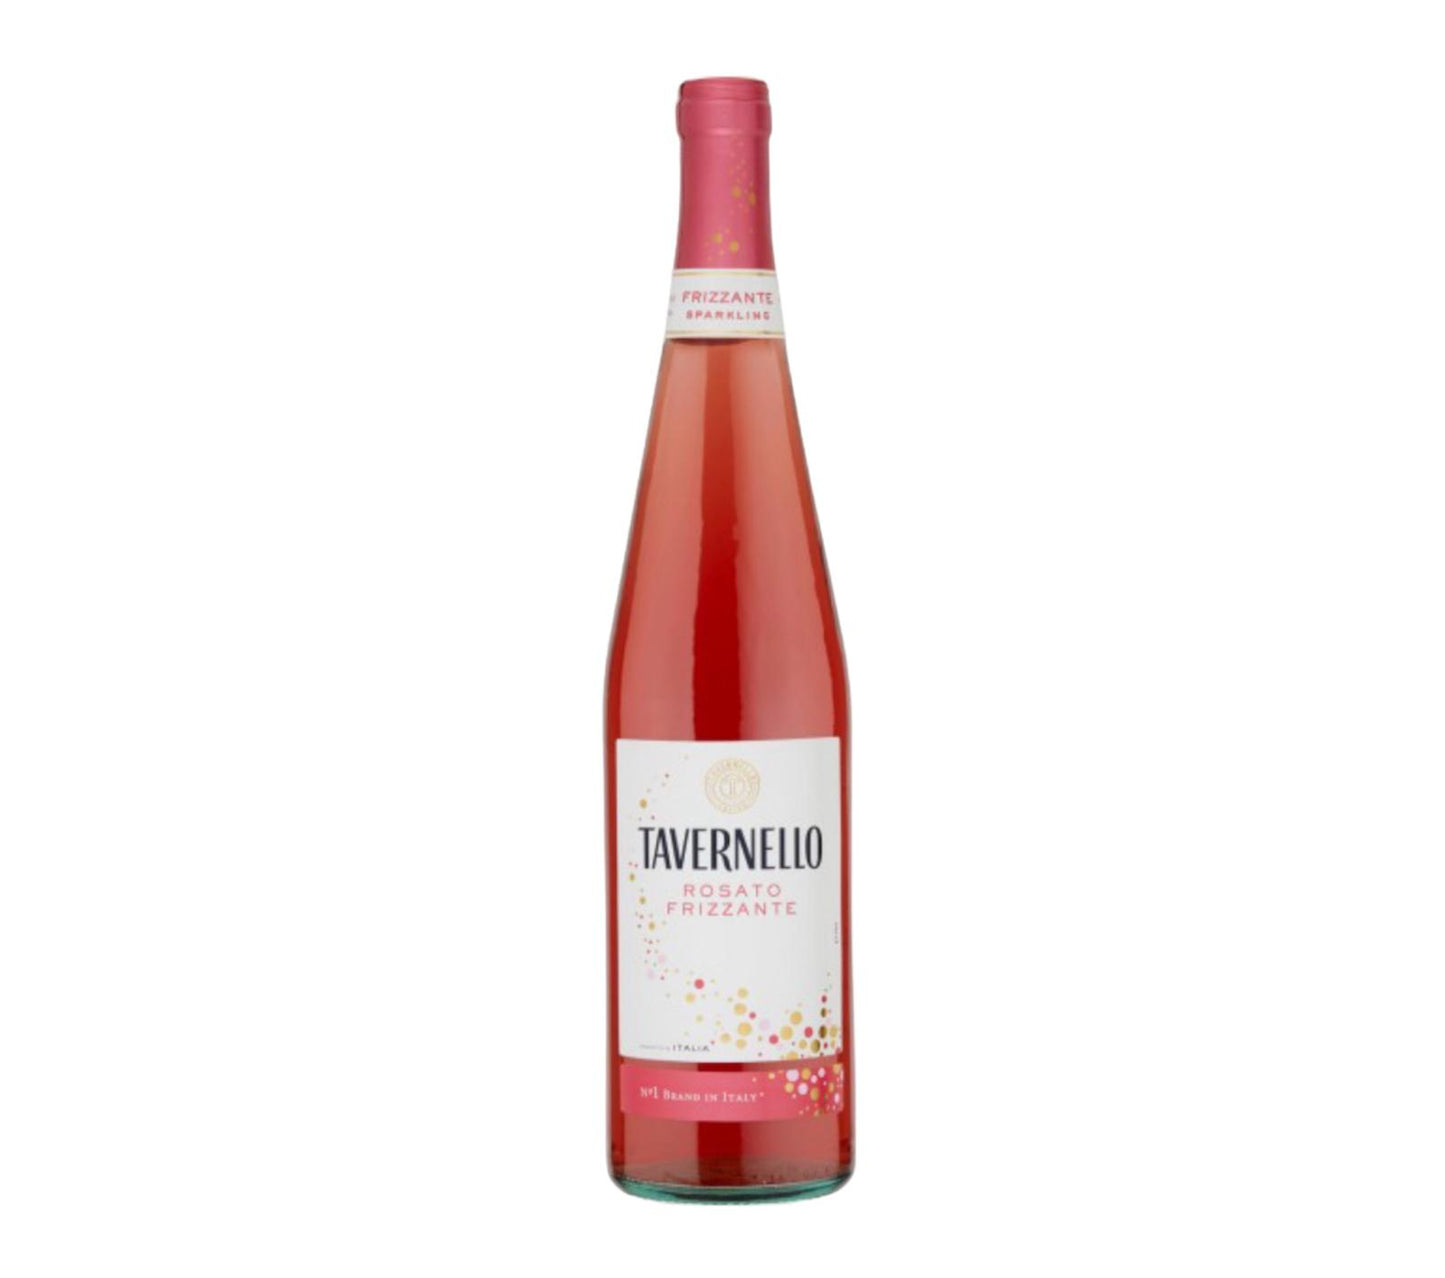 Tavernello vino frizzante rosato bottiglia in vetro da 75cl